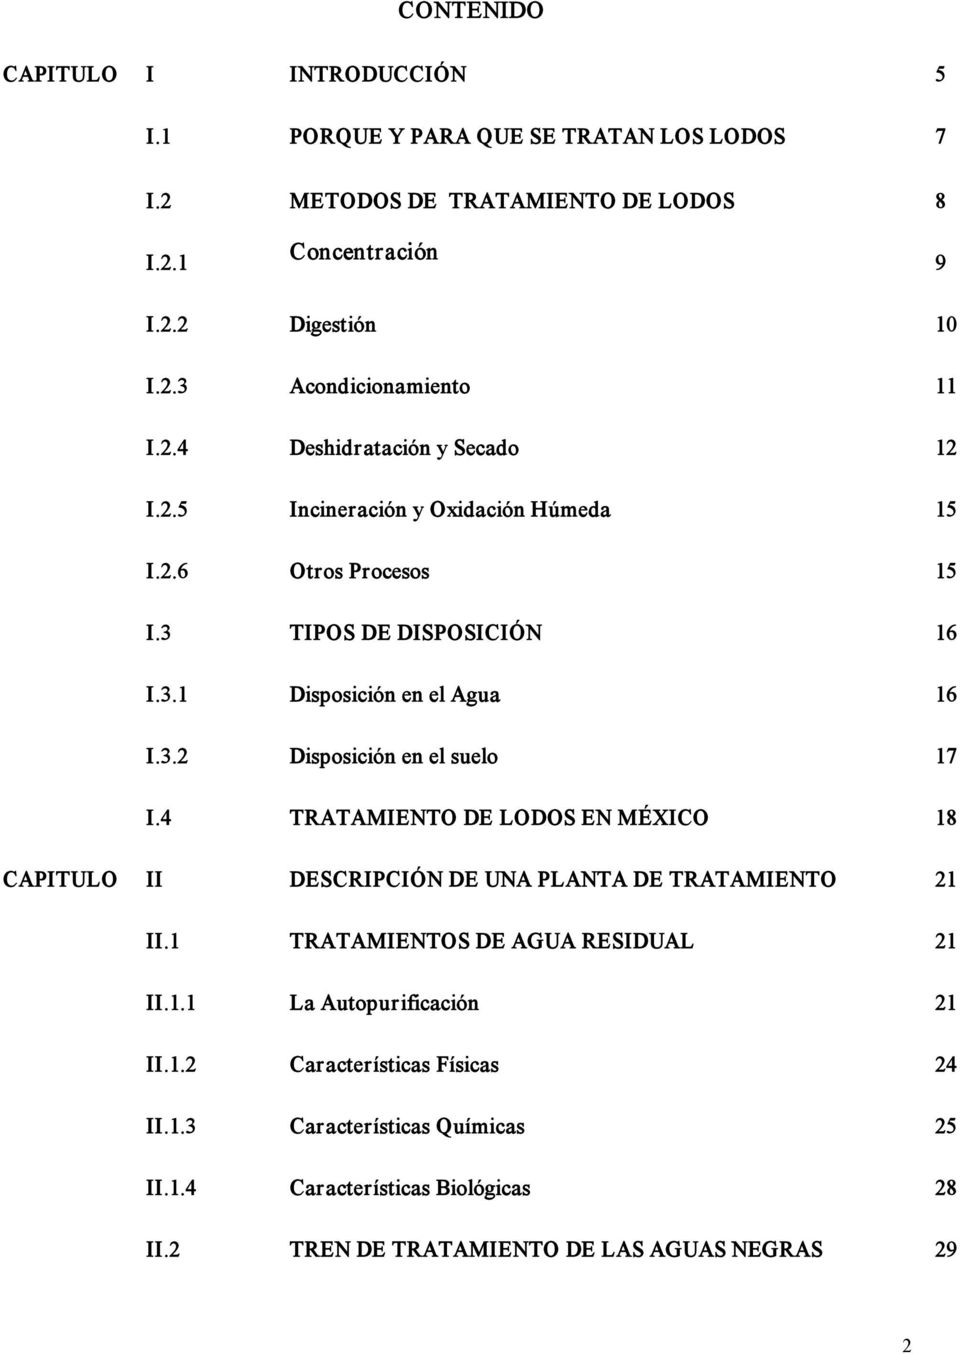 4 TRATAMIENTO DE LODOS EN MÉXICO 18 CAPITULO II DESCRIPCIÓN DE UNA PLANTA DE TRATAMIENTO 21 II.1 TRATAMIENTOS DE AGUA RESIDUAL 21 II.1.1 La Autopurificación 21 II.1.2 Características Físicas 24 II.